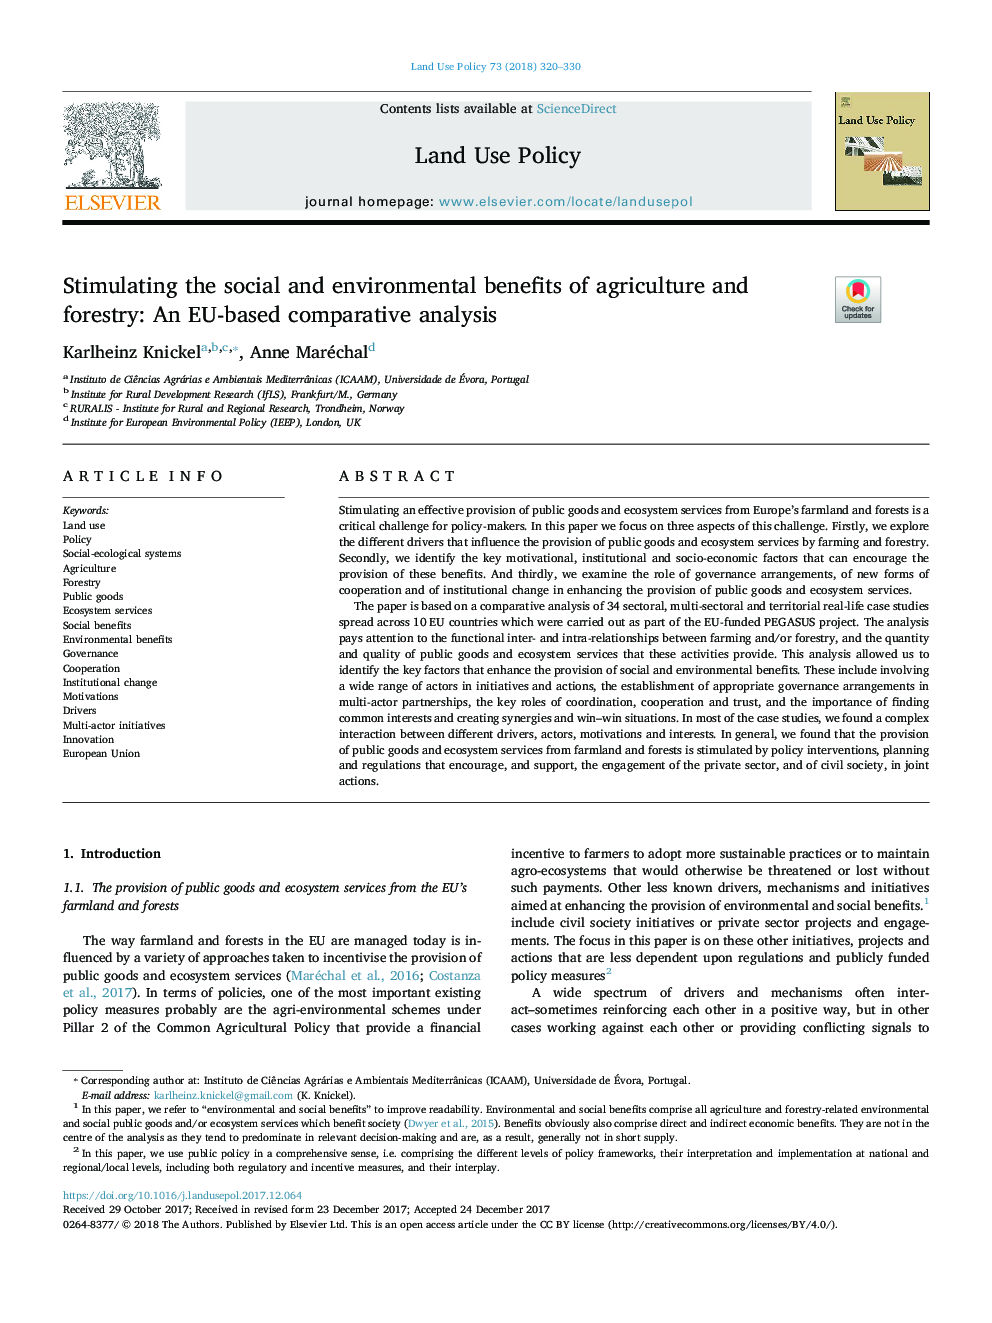 تحریک منافع اجتماعی و زیست محیطی کشاورزی و جنگلداری: تجزیه و تحلیل مقدماتی مبتنی بر اتحادیه اروپا 